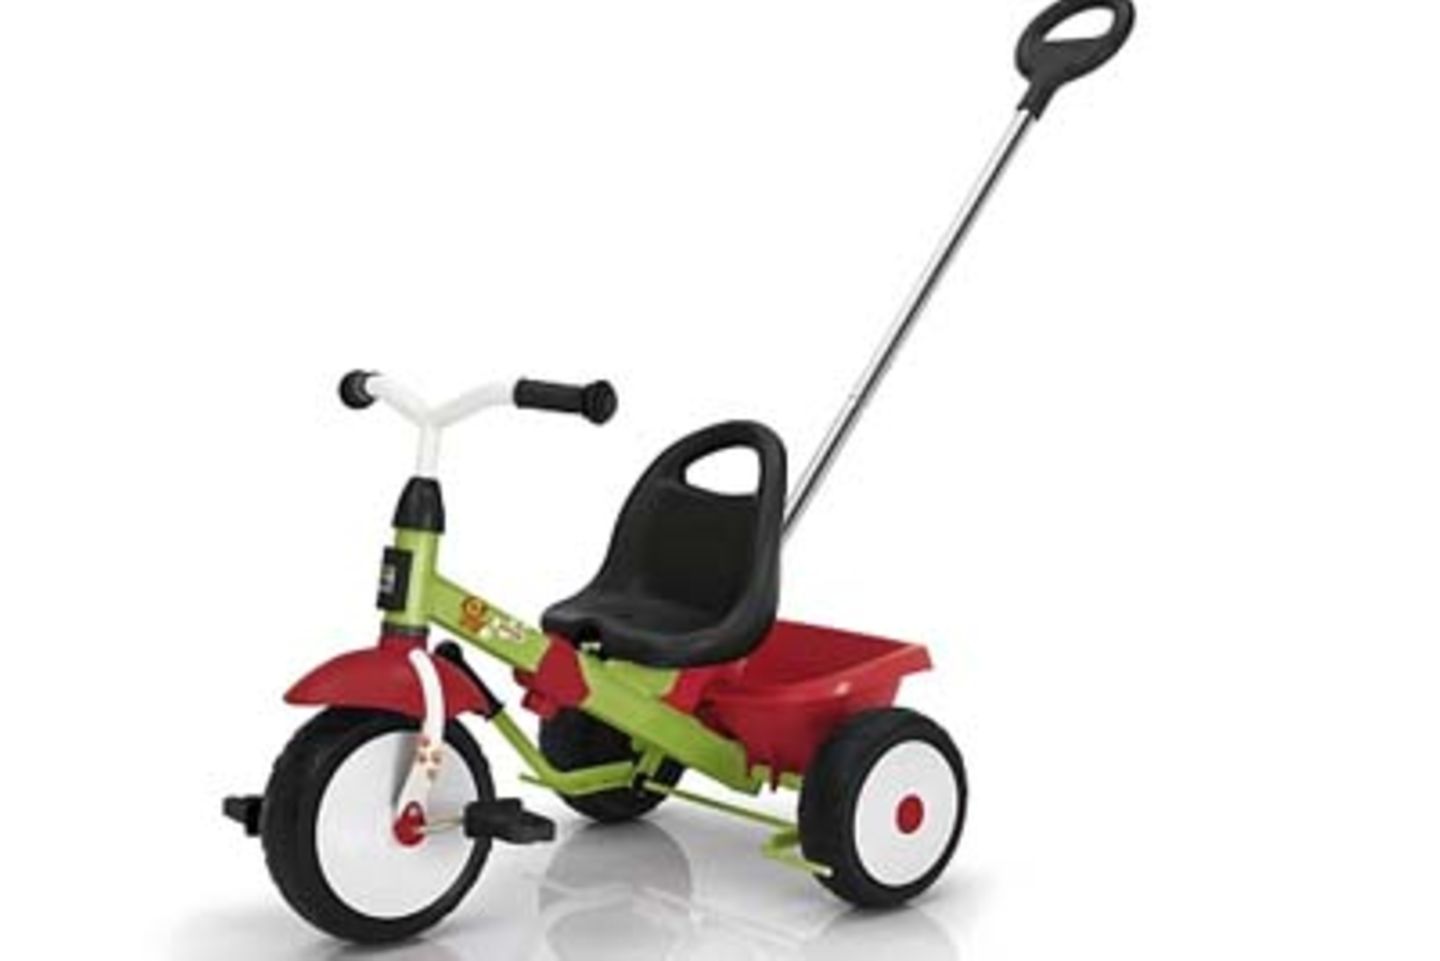 Kinderfahrzeuge: Dreirad mit Stange von "Kettler" über Toysrus.de